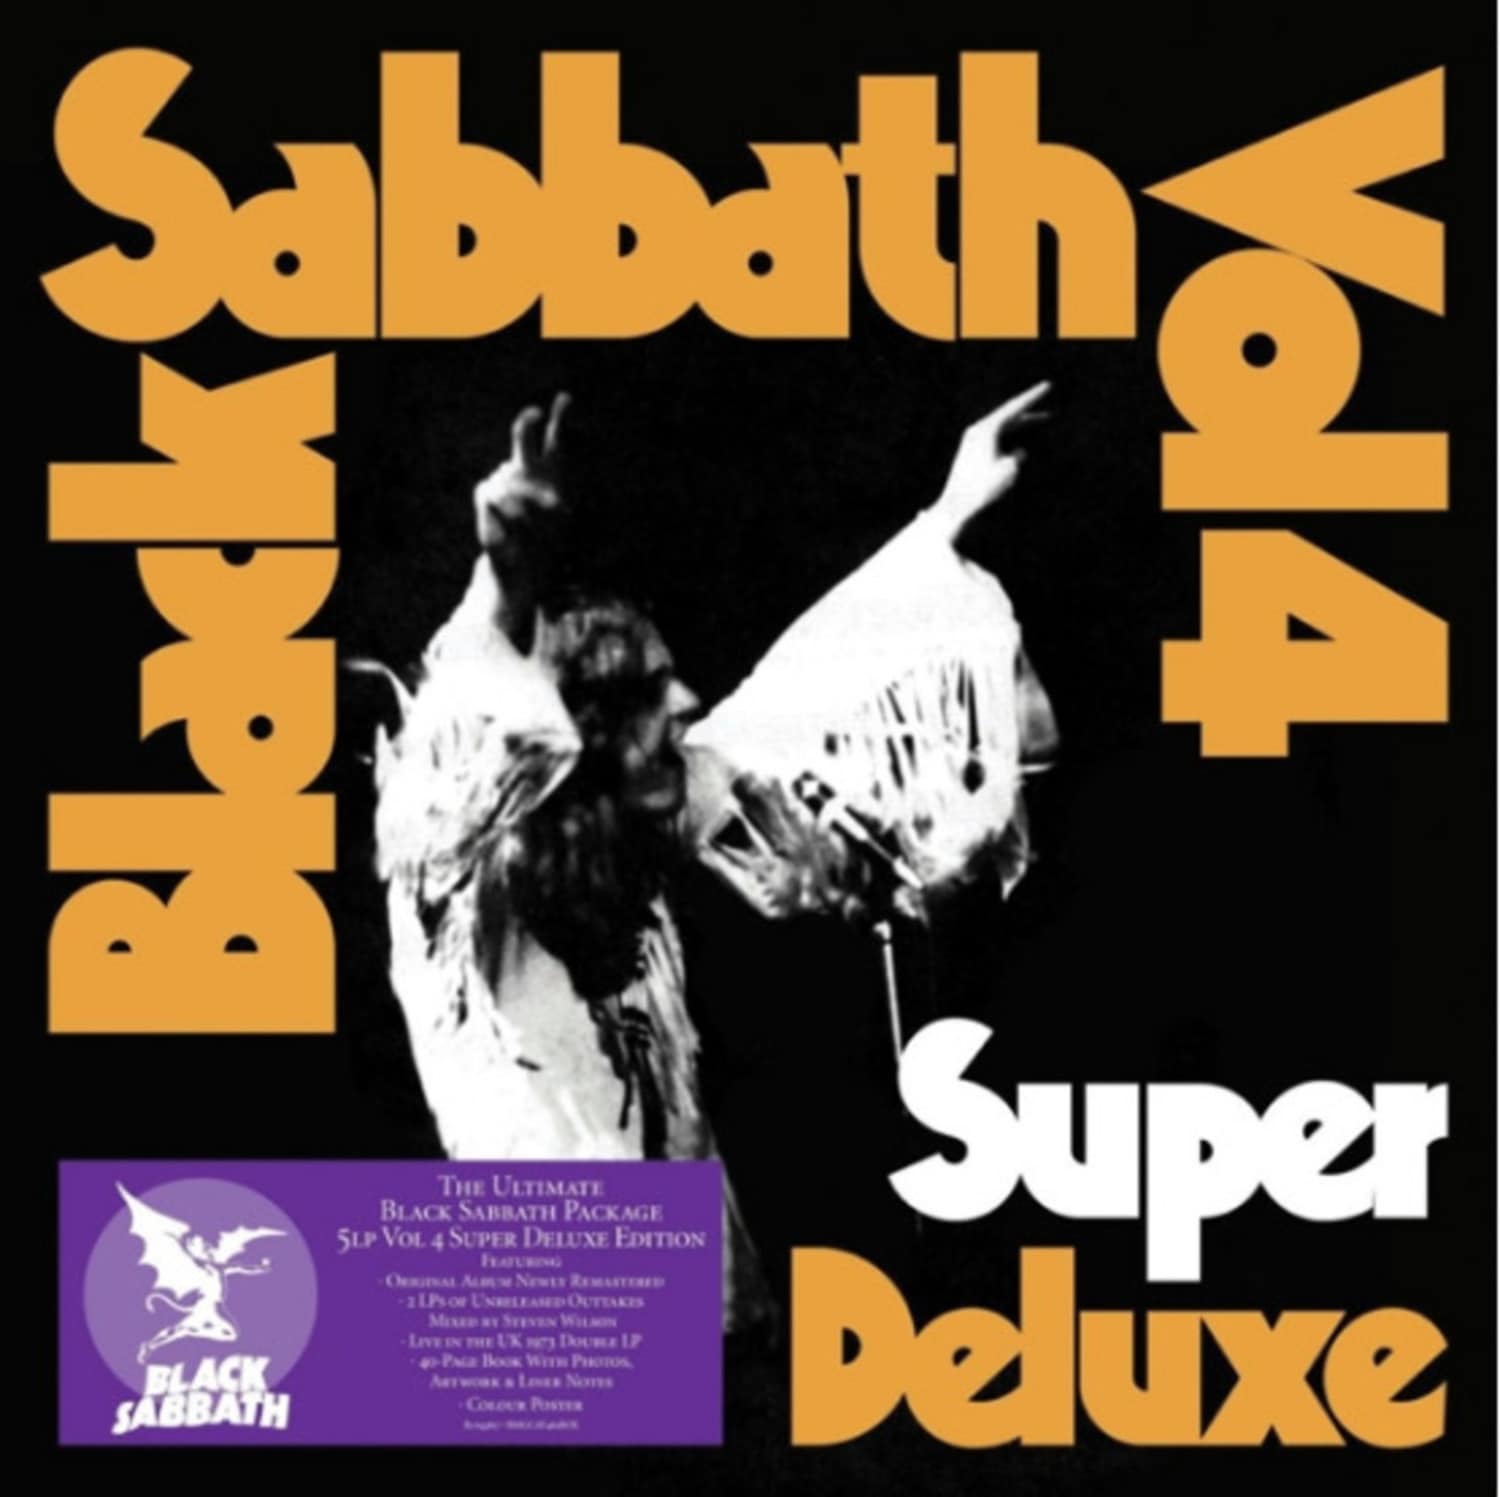 Black Sabbath - VOL.4 